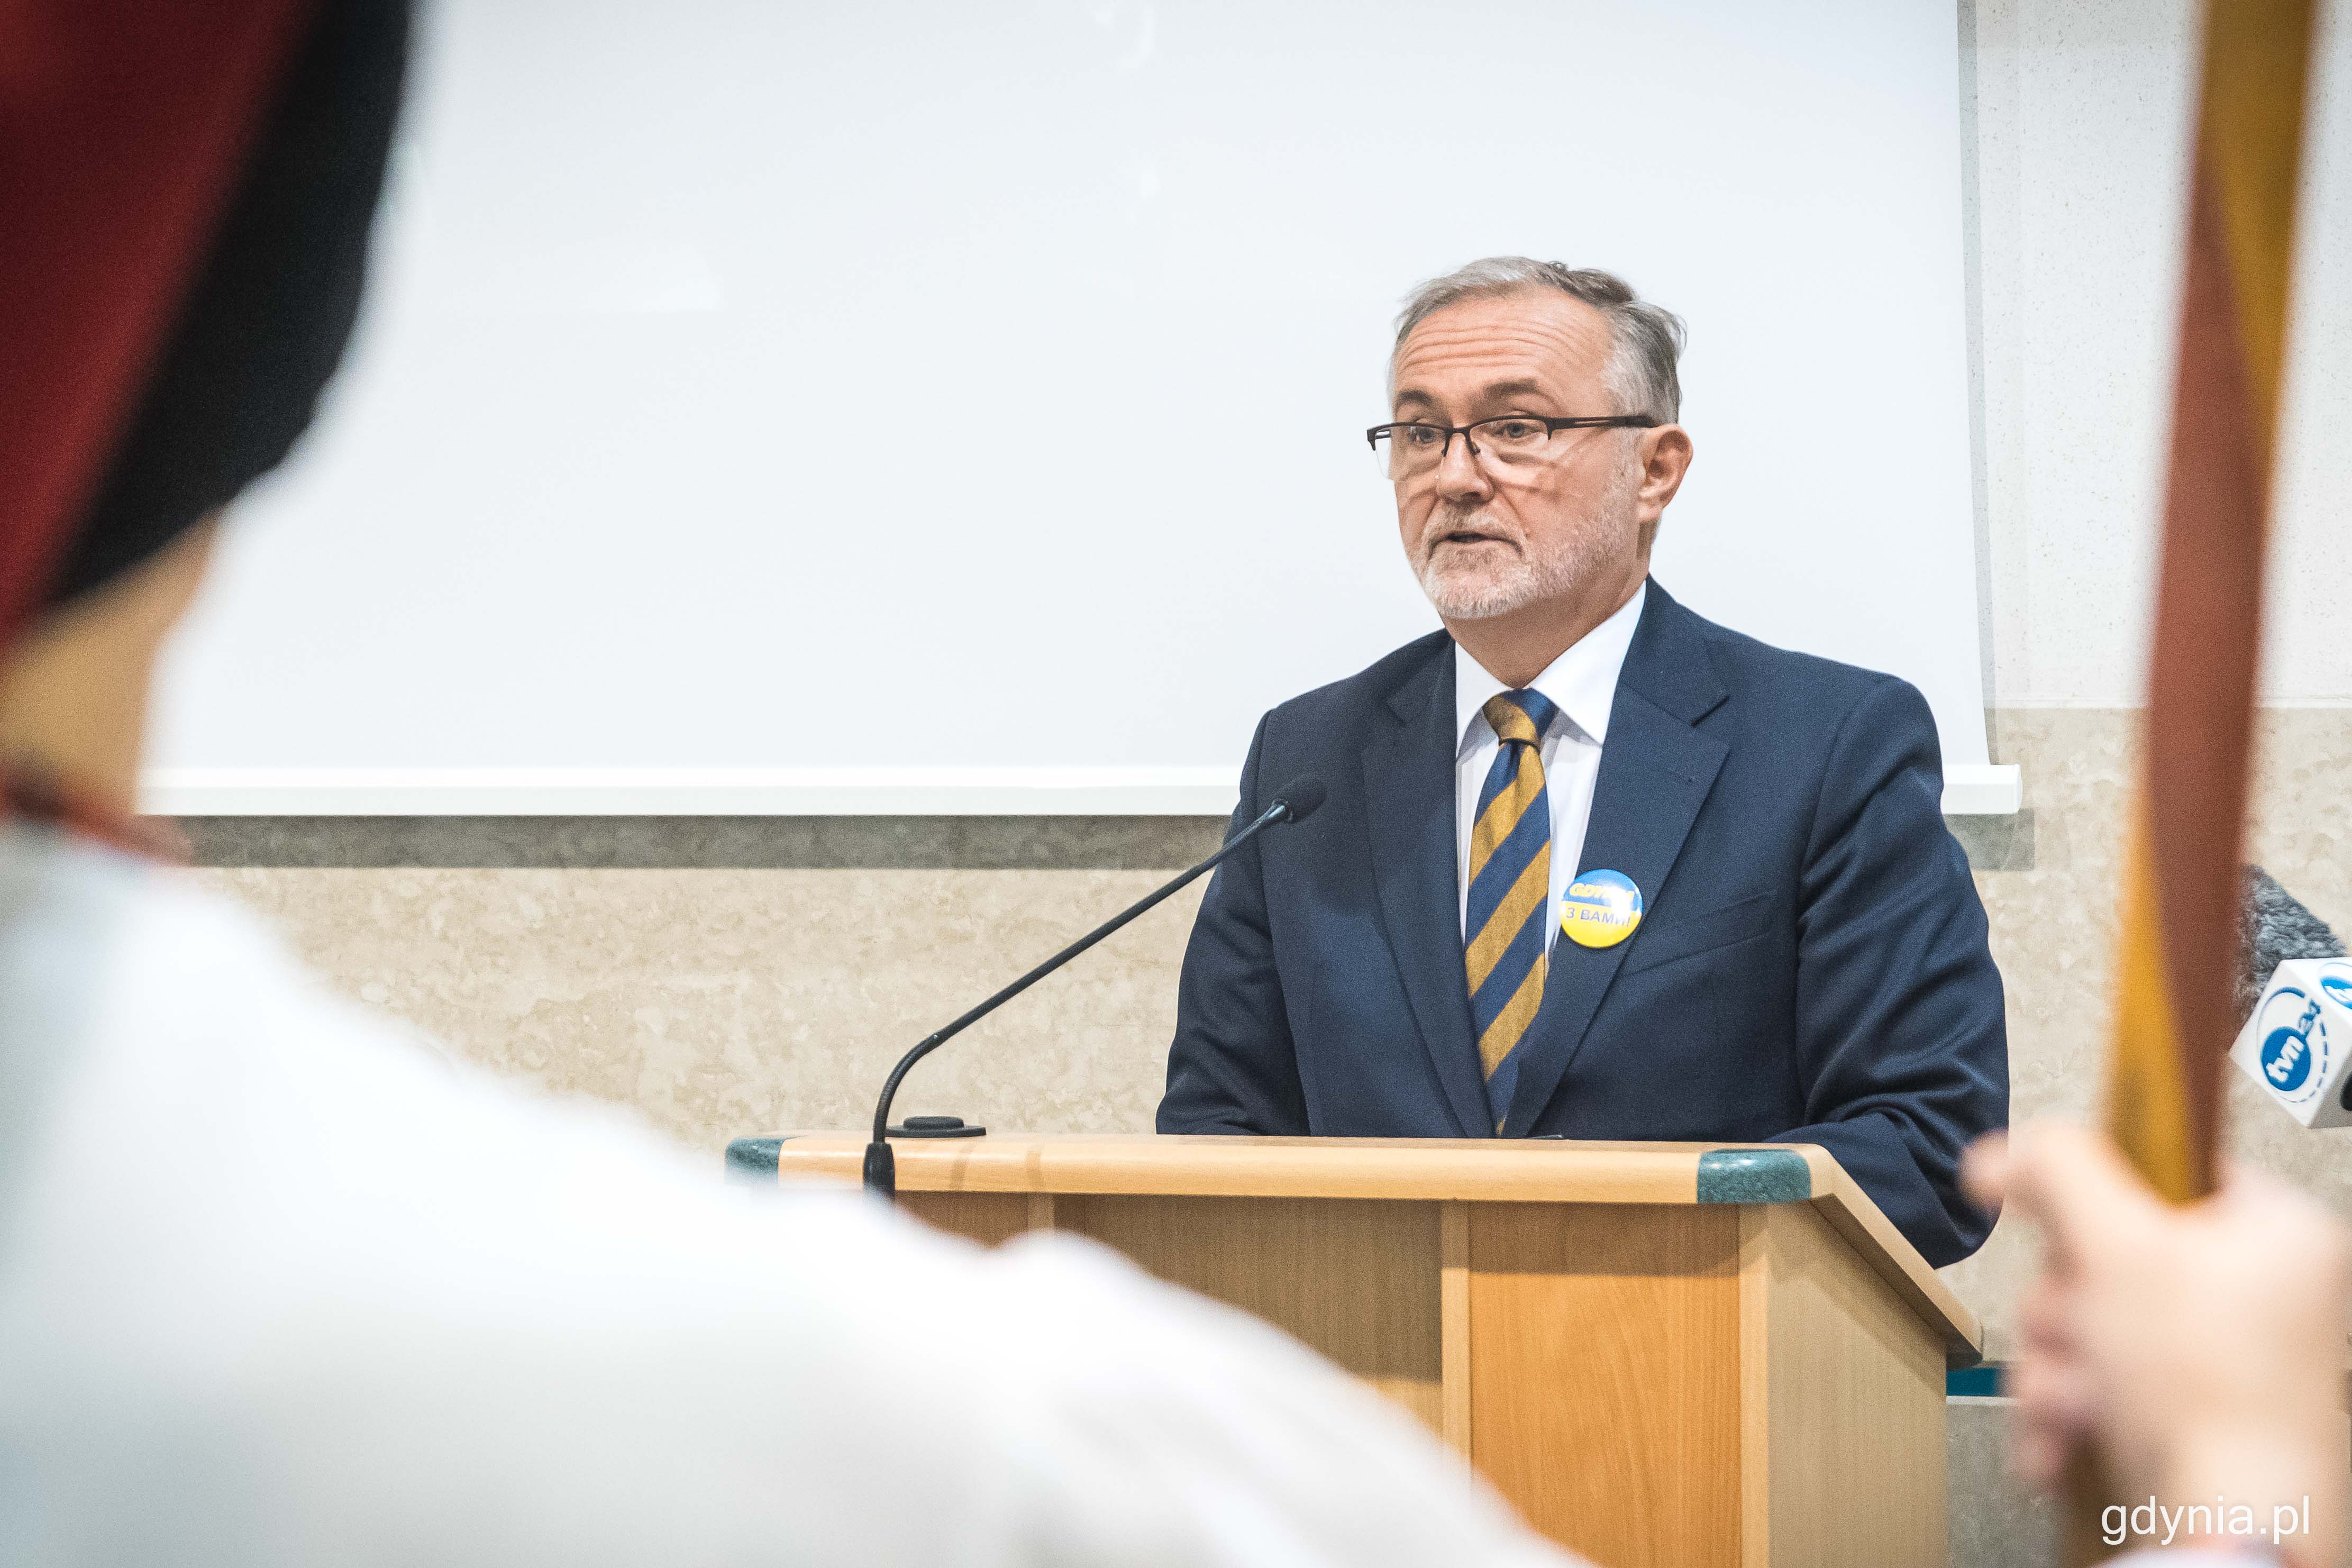 Prezydent Gdyni Wojciech Szczurek podczas wystąpienia na XLI sesji Rady Miasta Gdańska // fot. Kamil Złoch